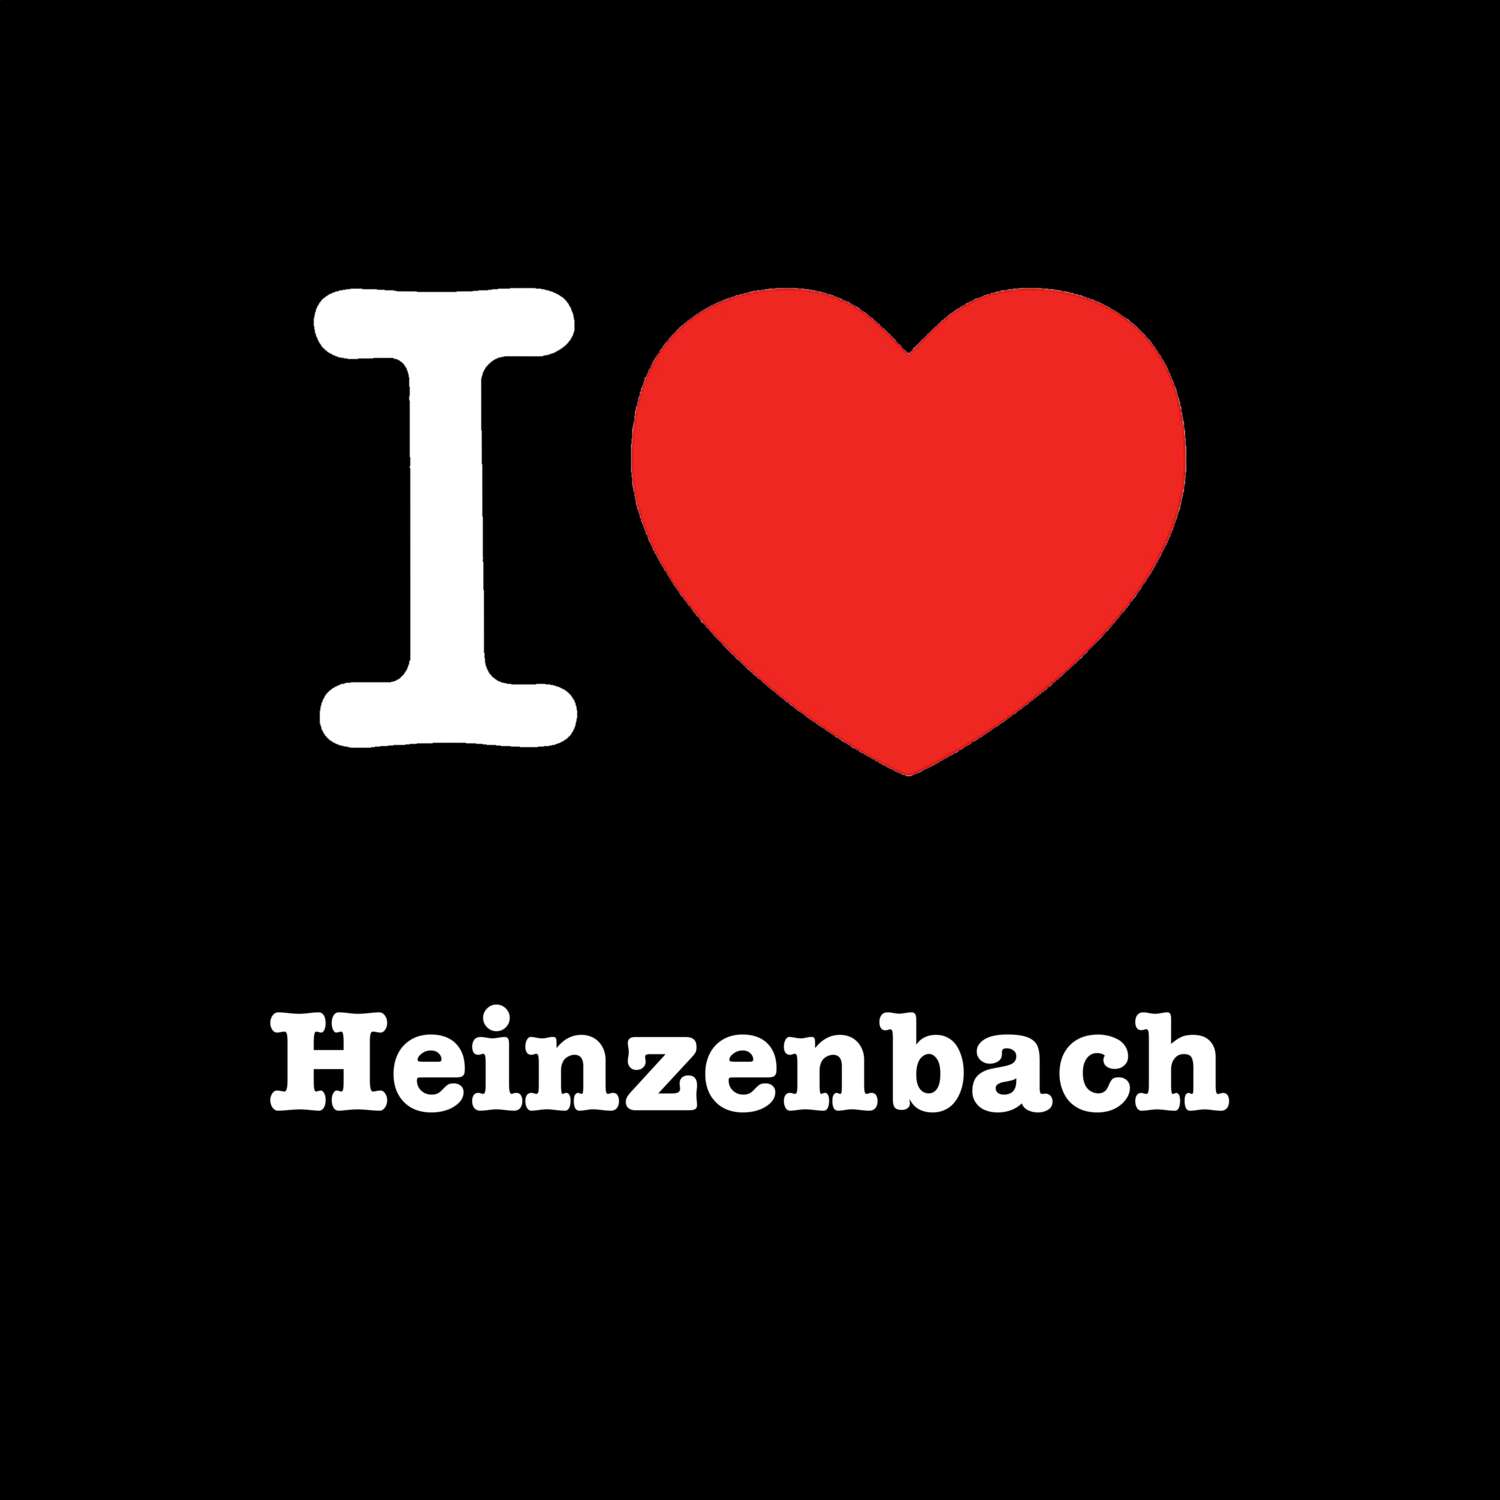 Heinzenbach T-Shirt »I love«